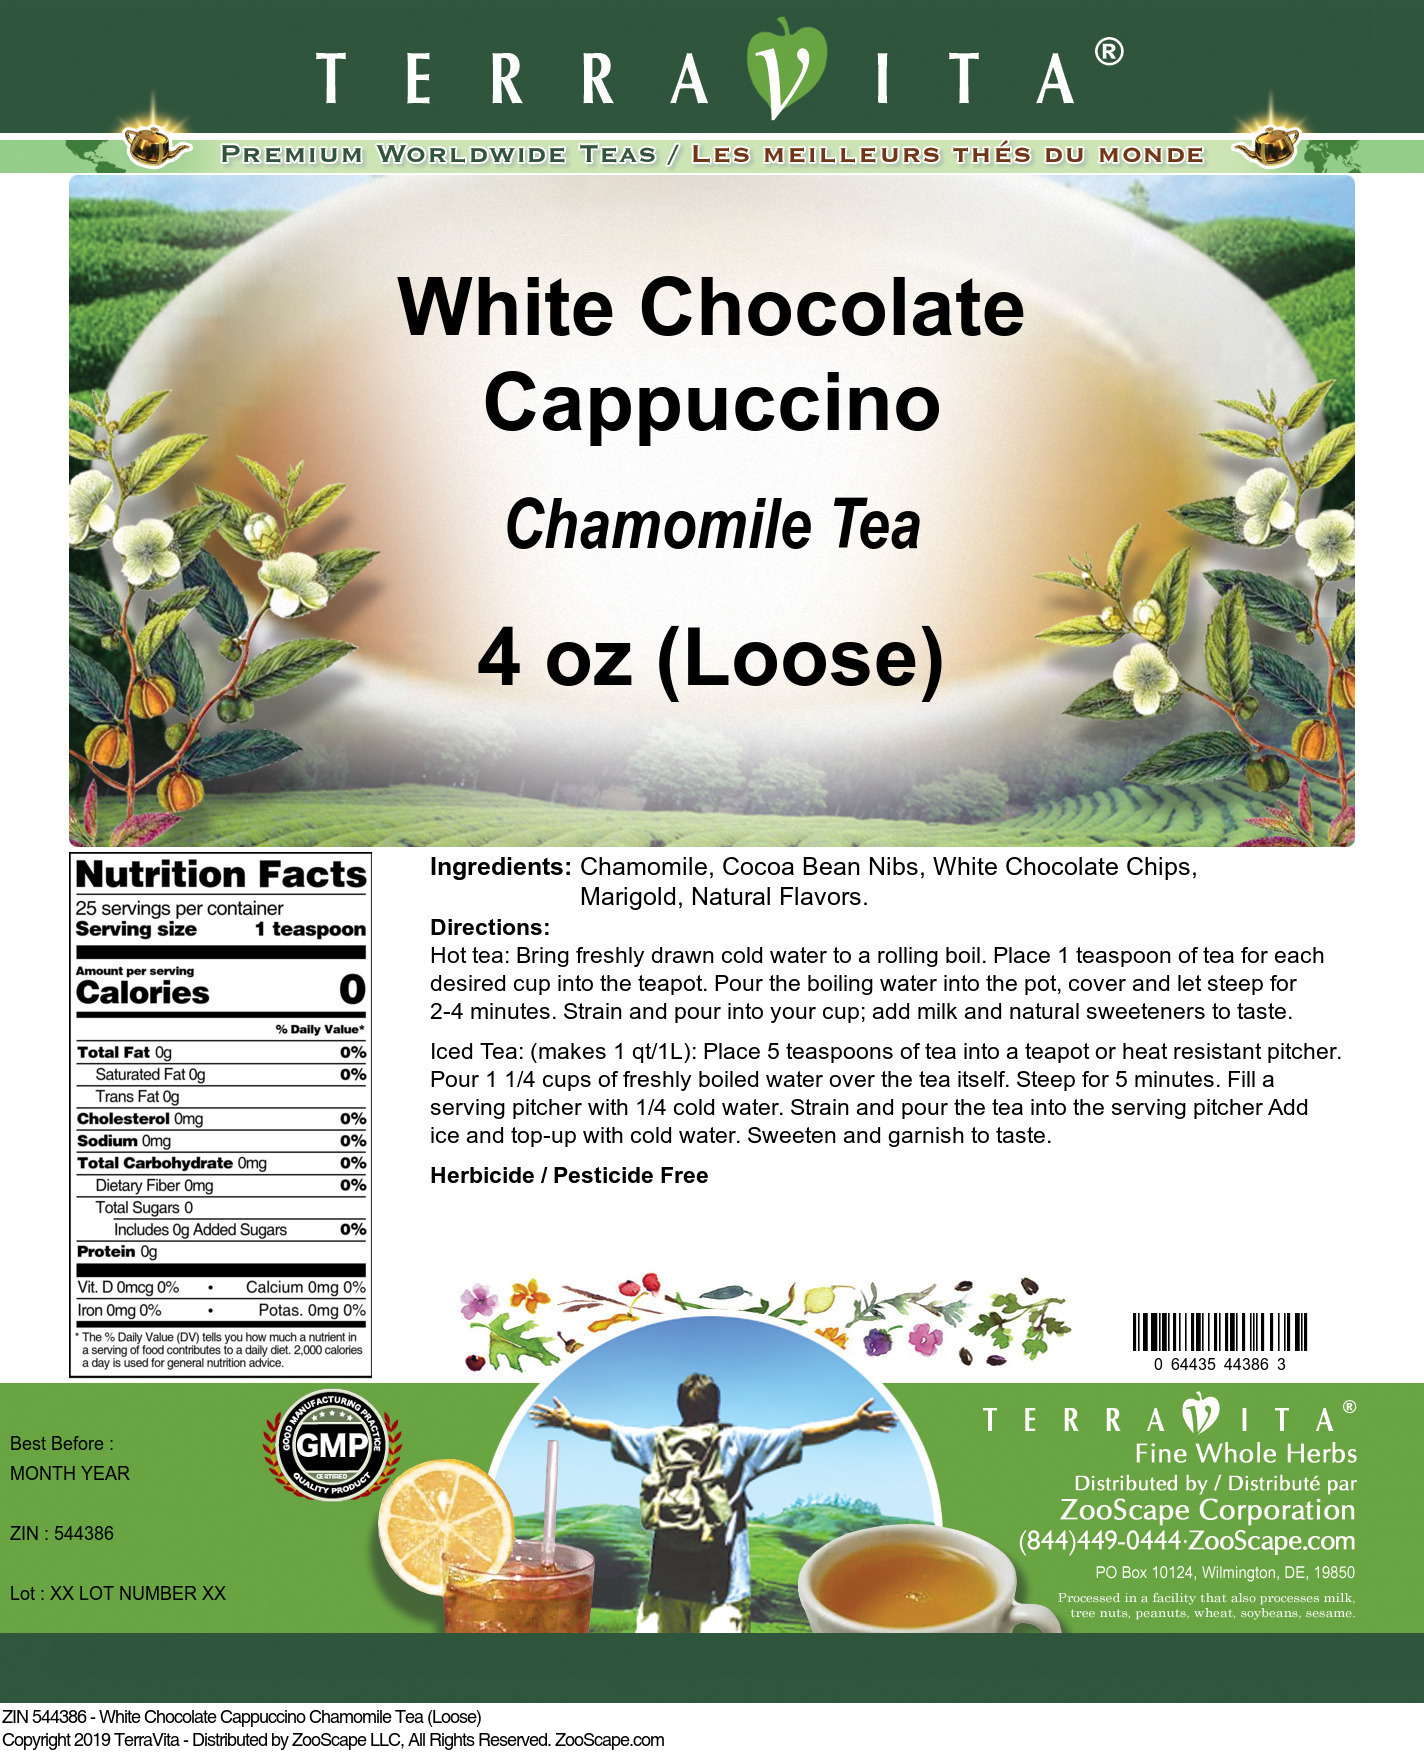 White Chocolate Cappuccino Chamomile Tea (Loose) - Label